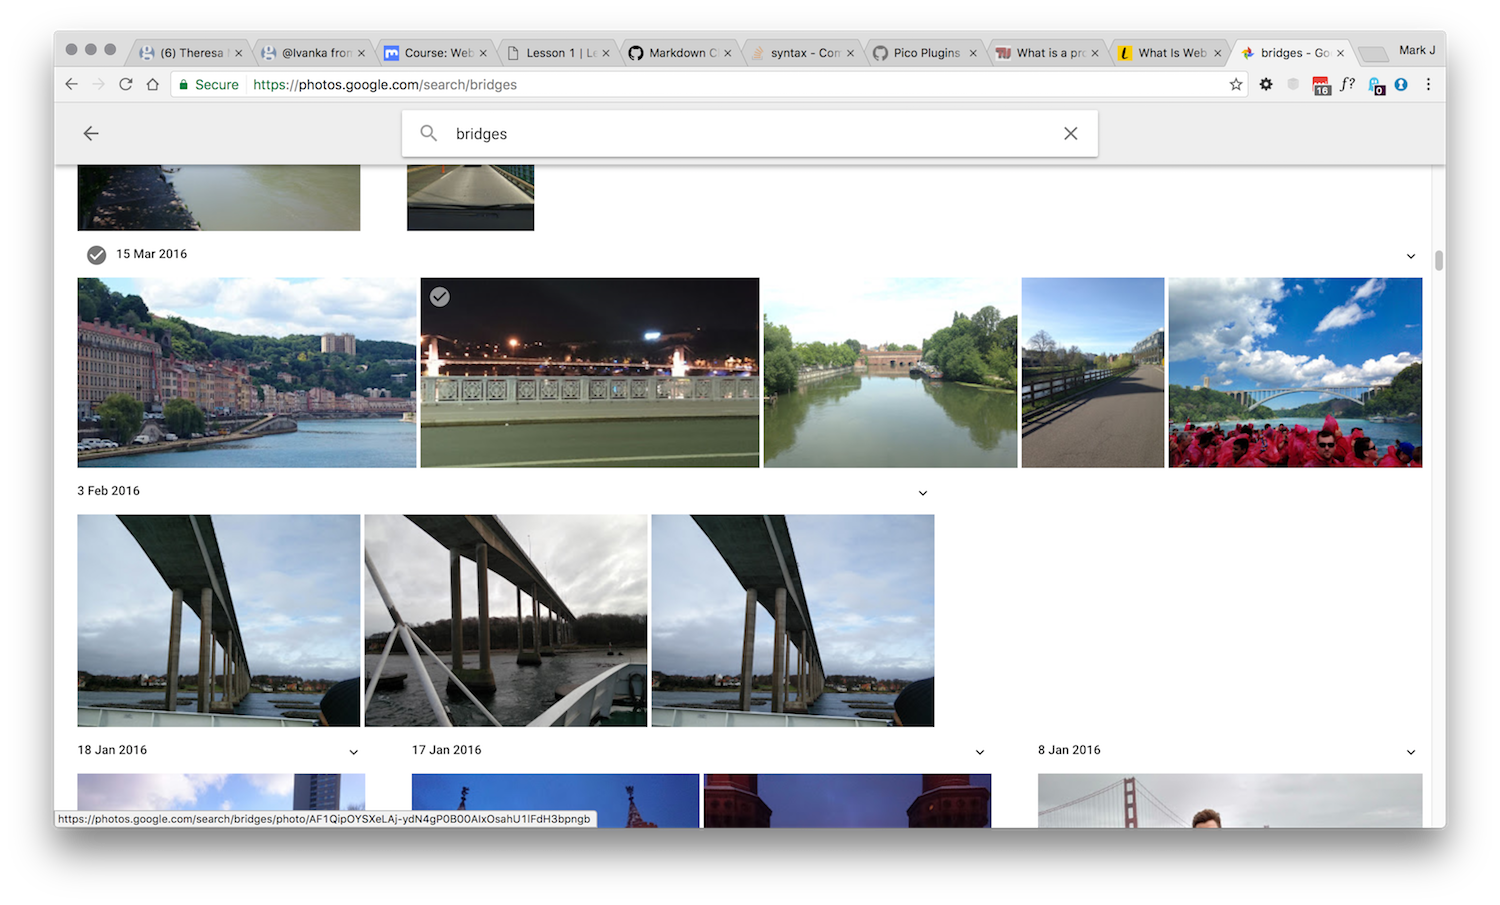 Google Images search for Bridges